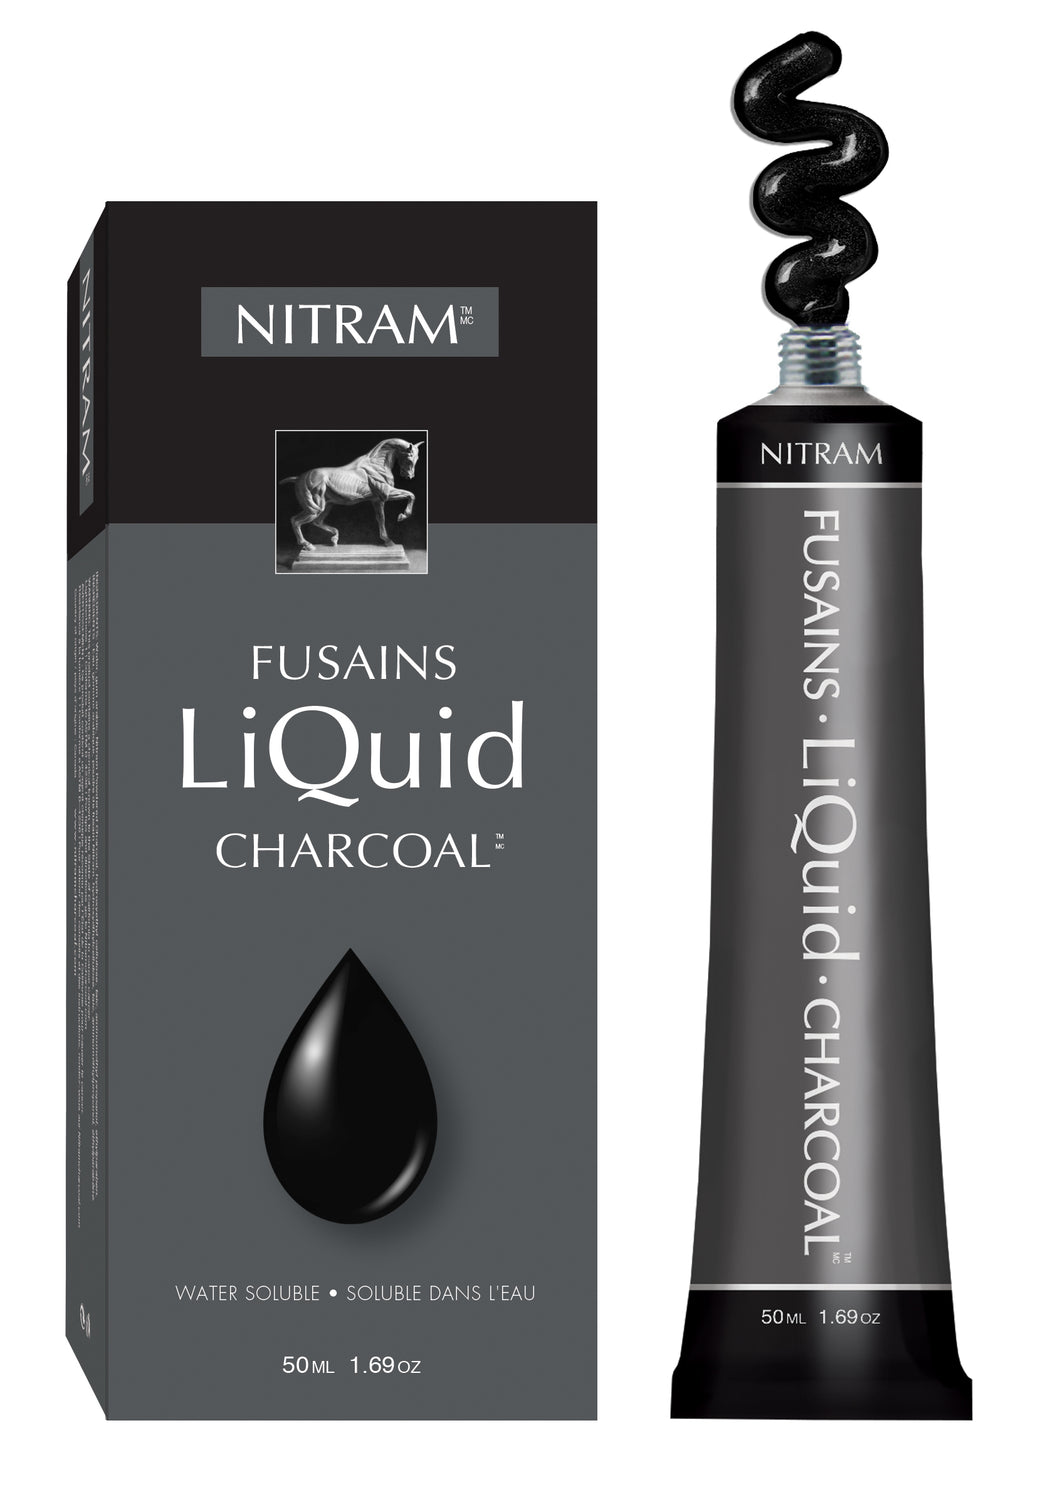 Carboncillo Liquido Nitram 50 ml / Liquid Charcoal 50 ml